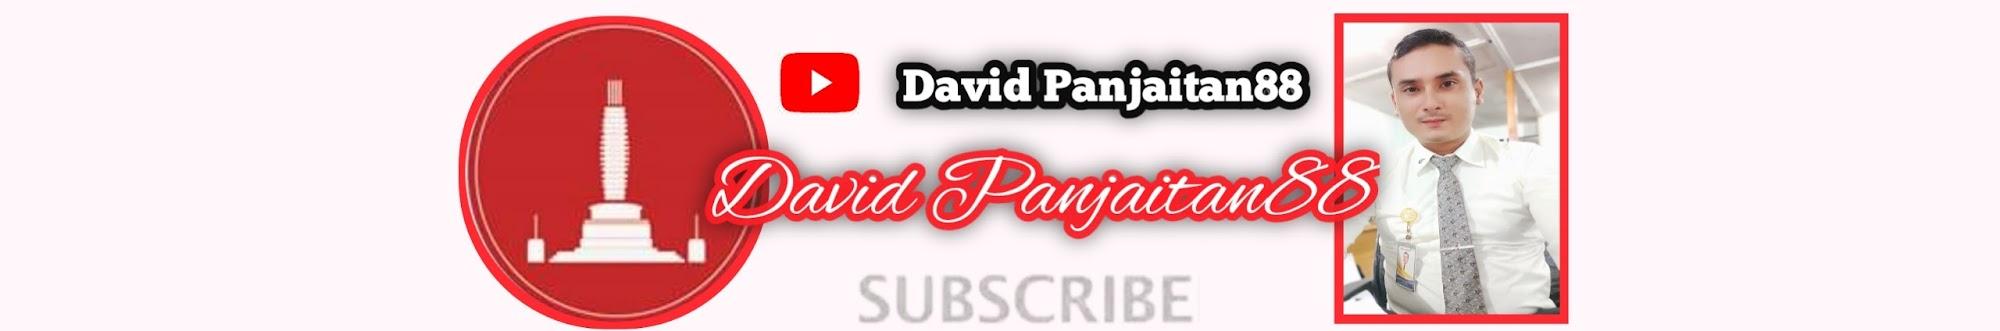 David Panjaitan88